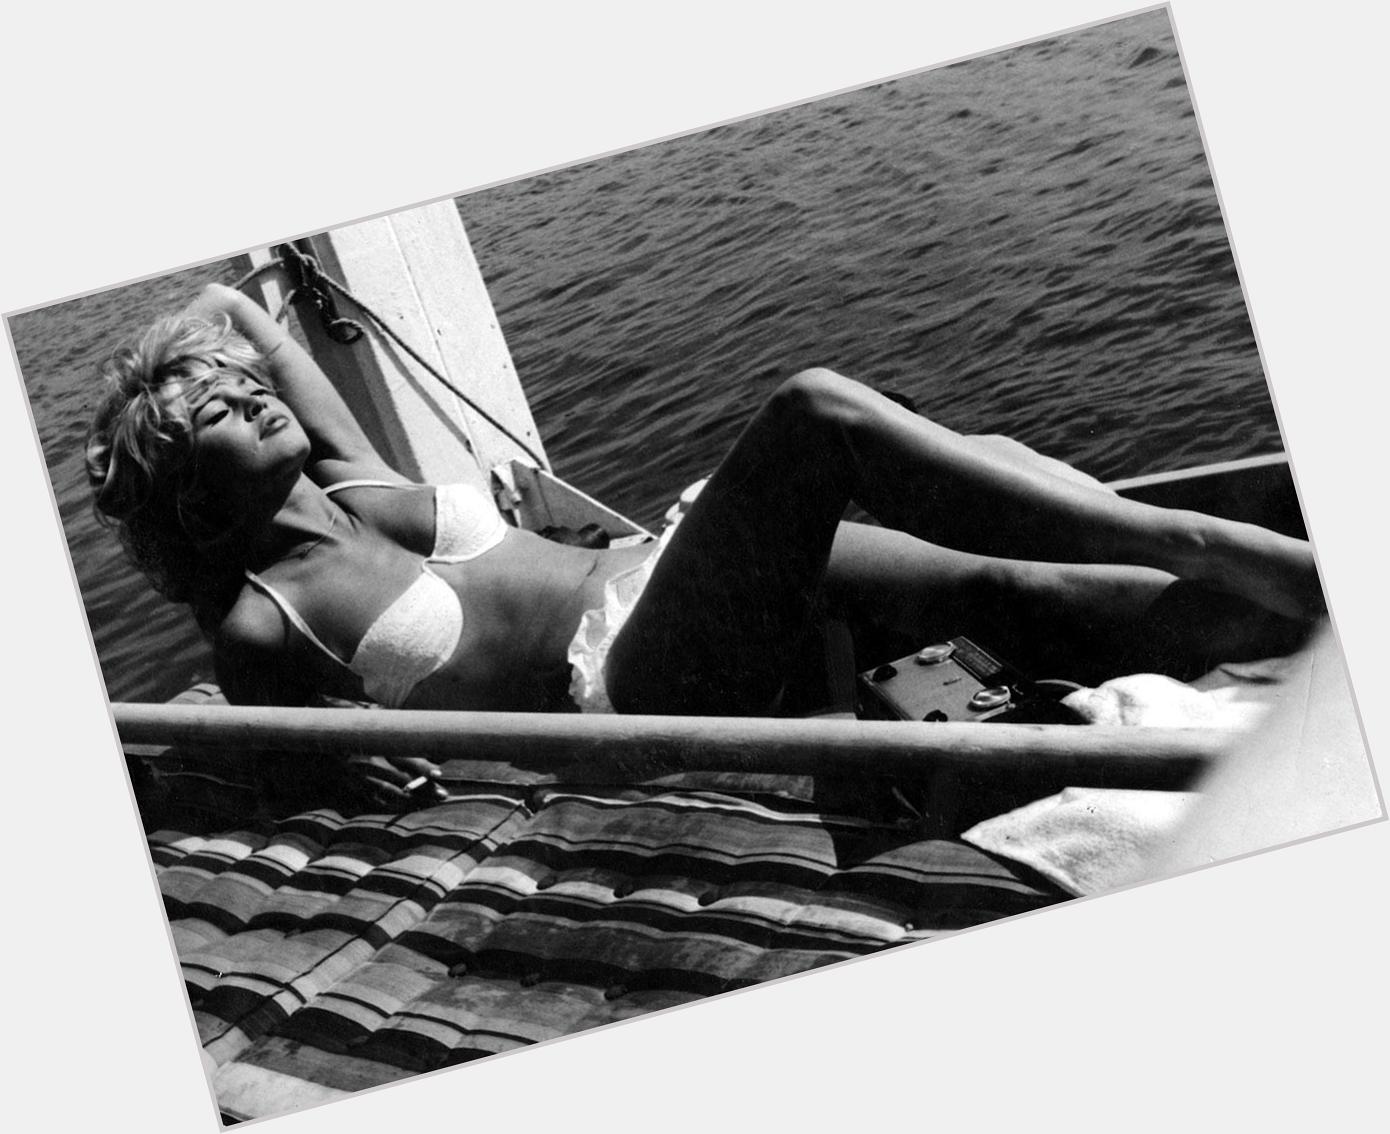 Happy birthday to the glamorous and gorgeous Brigitte Bardot. 